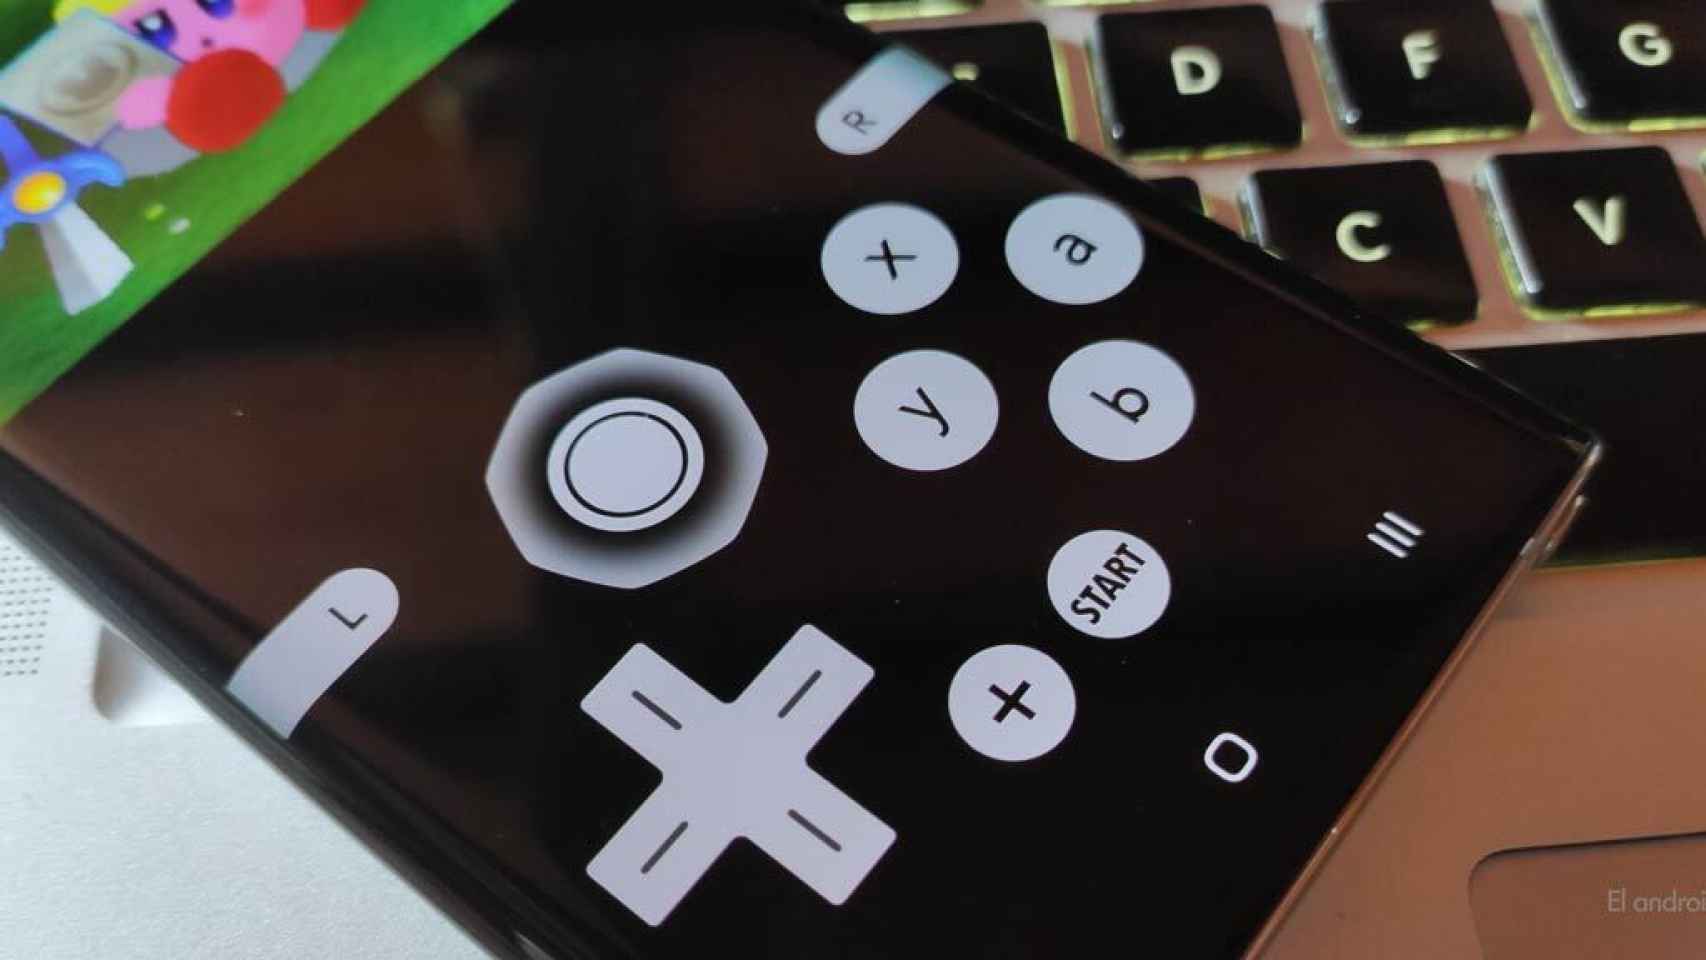 La Nintendo 3ds En Moviles Android Asi Funciona El Emulador Citra No Oficial